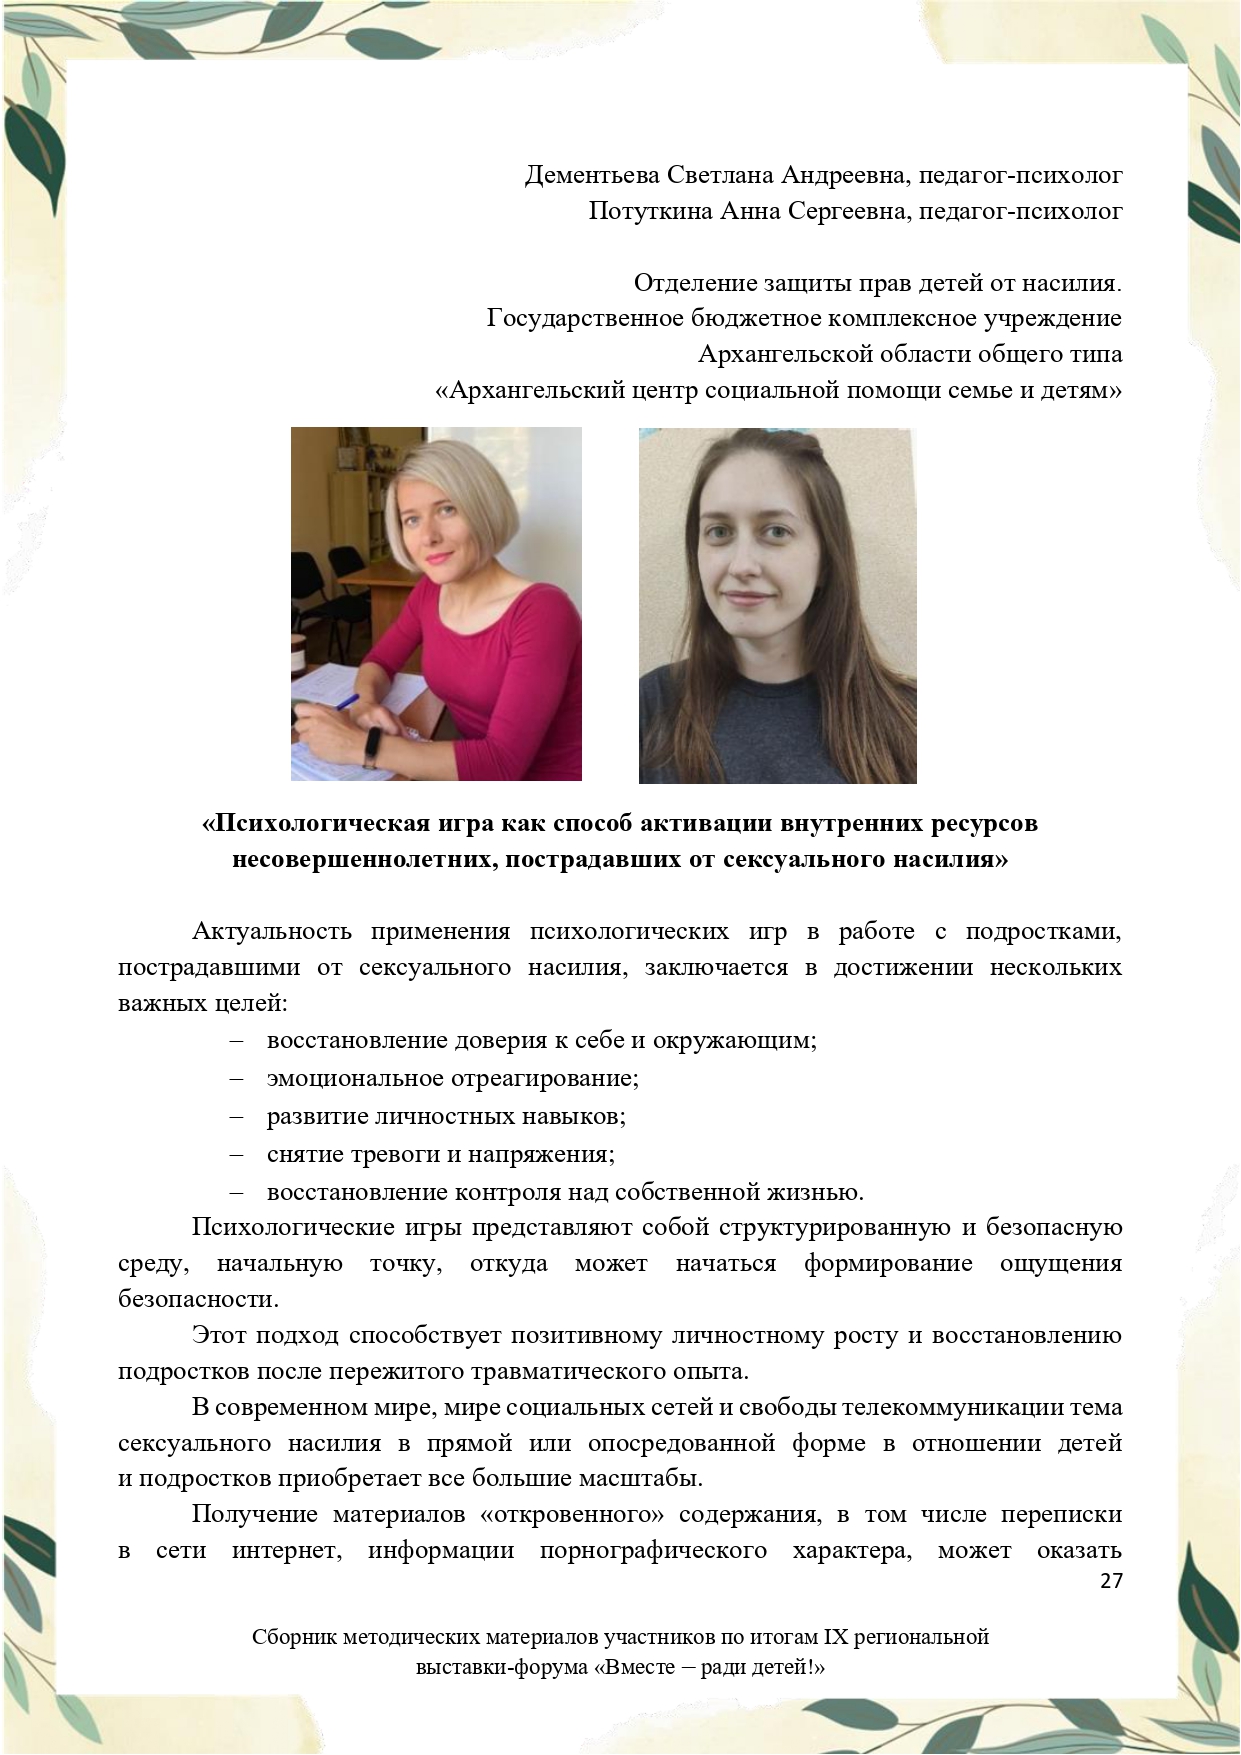 Sbornik_metodicheskikh_materialov_uchastnikov_IX_regionalnoy_vystavki-foruma_Vmeste__radi_detey_33__2023_page-0027